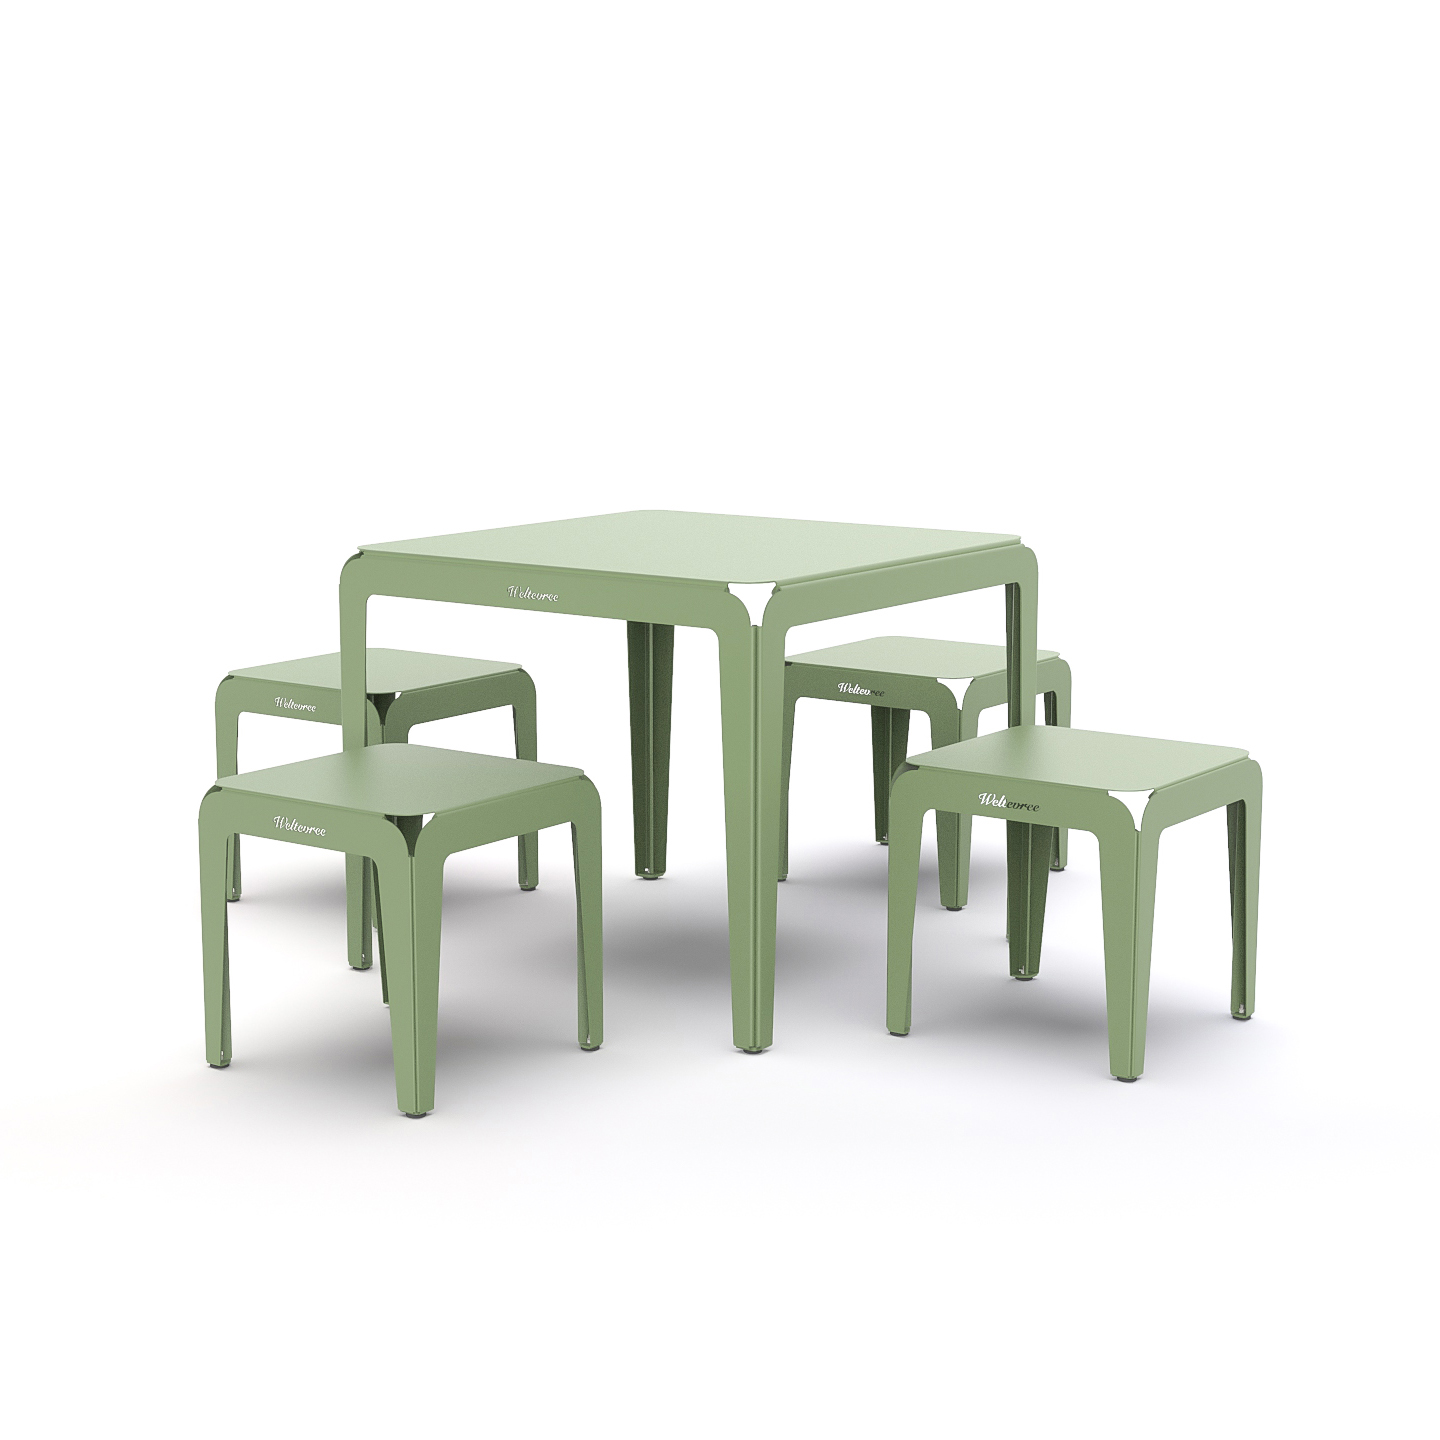 Weltevree-groen-bended-table-stool-studio